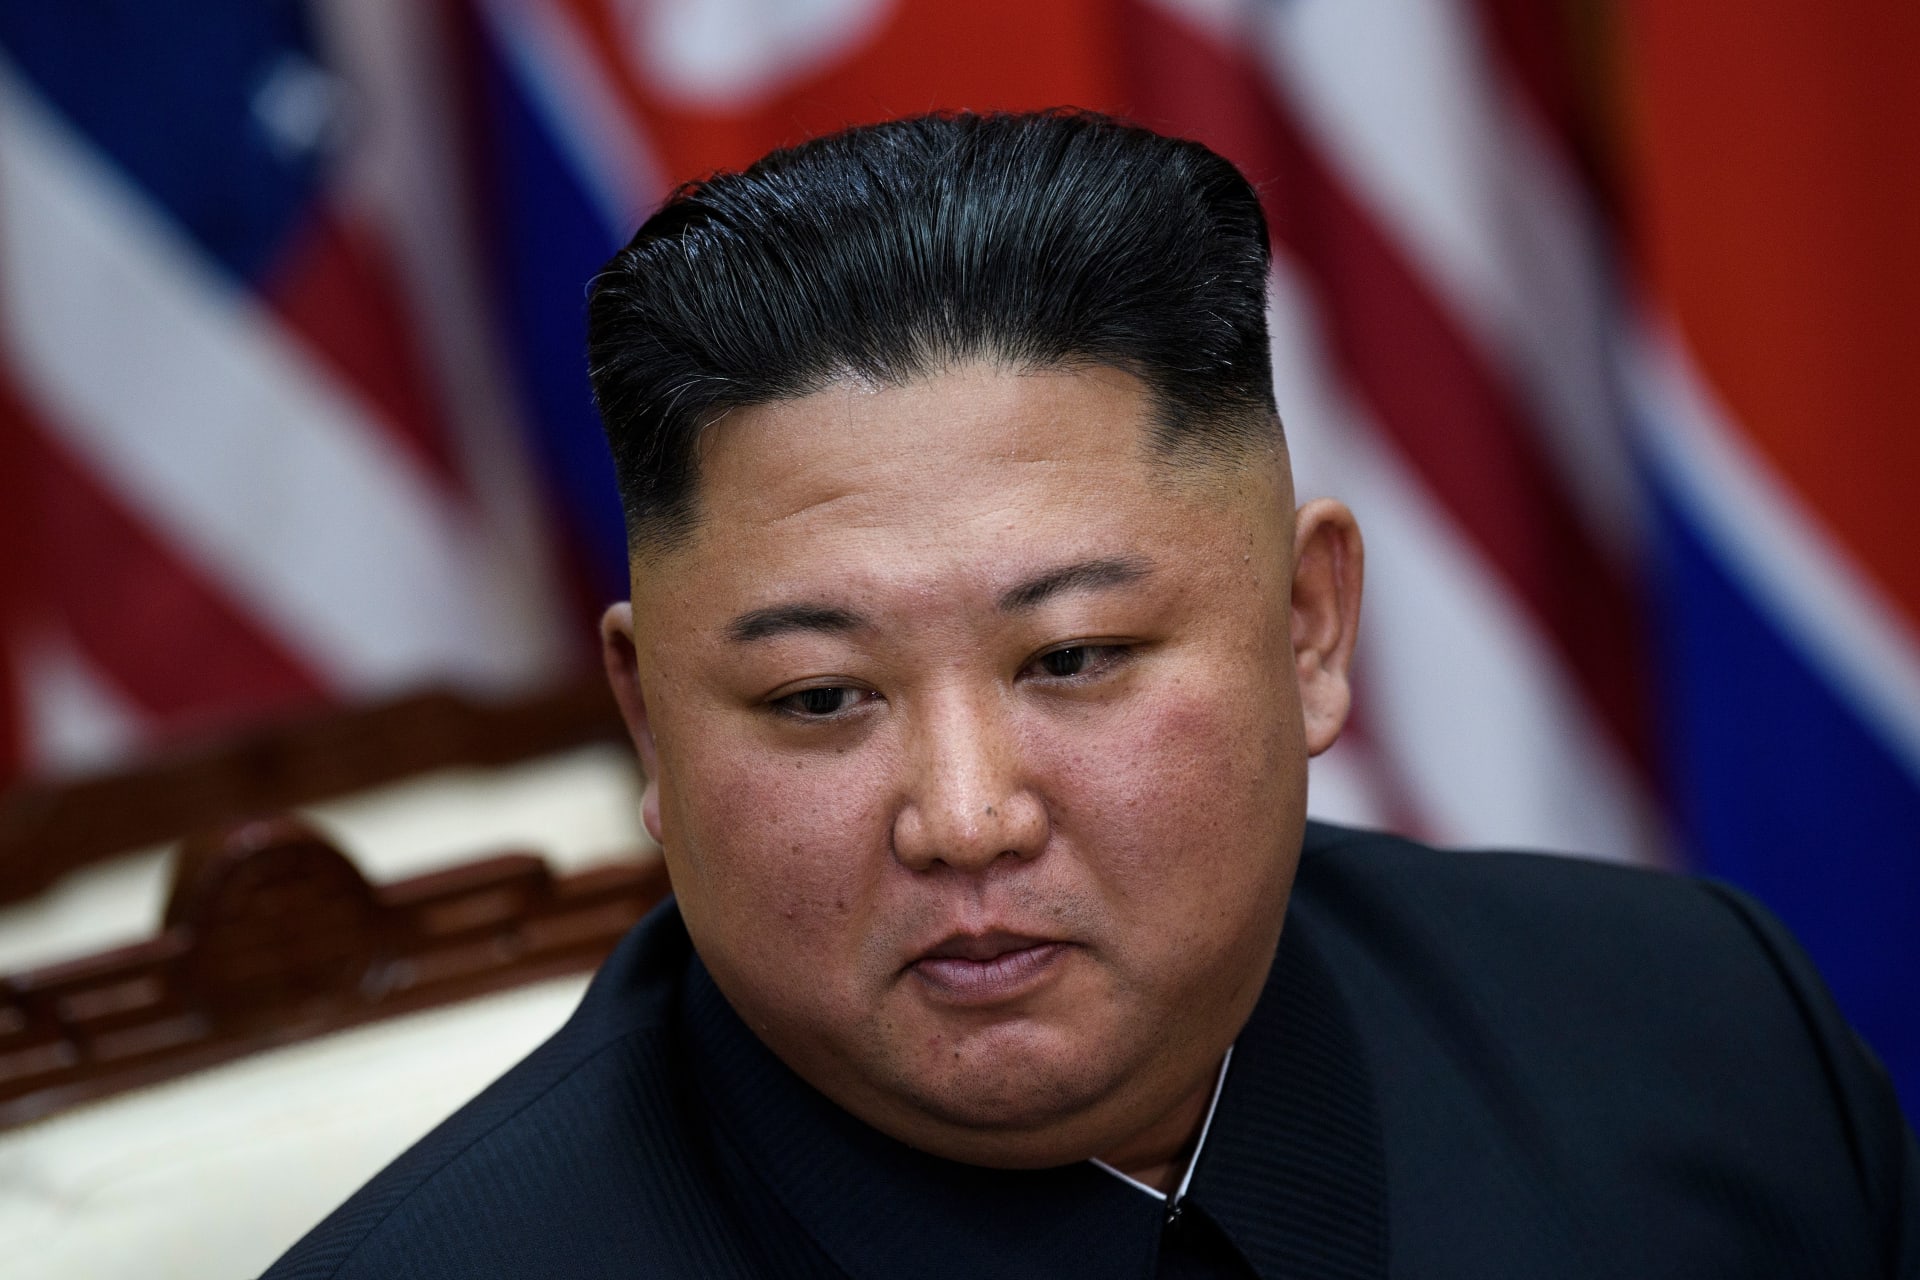 مسؤول أمريكي: زعيم كوريا الشمالية في "خطر شديد" بعد إجرائه عملية جراحية 